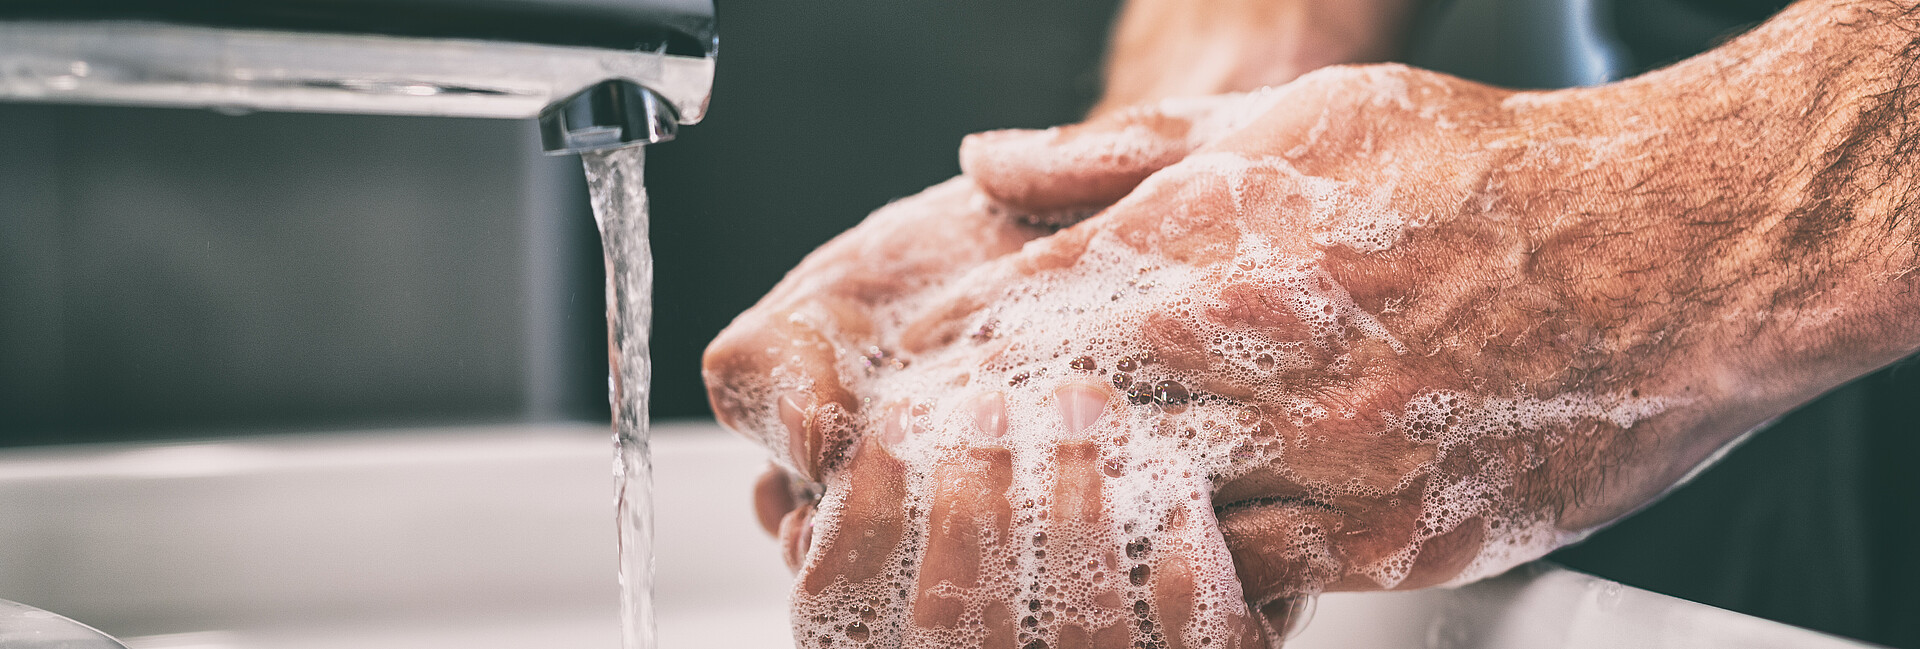 Mann wäscht sich die Hände am Waschbecken unter fließendem Wasser